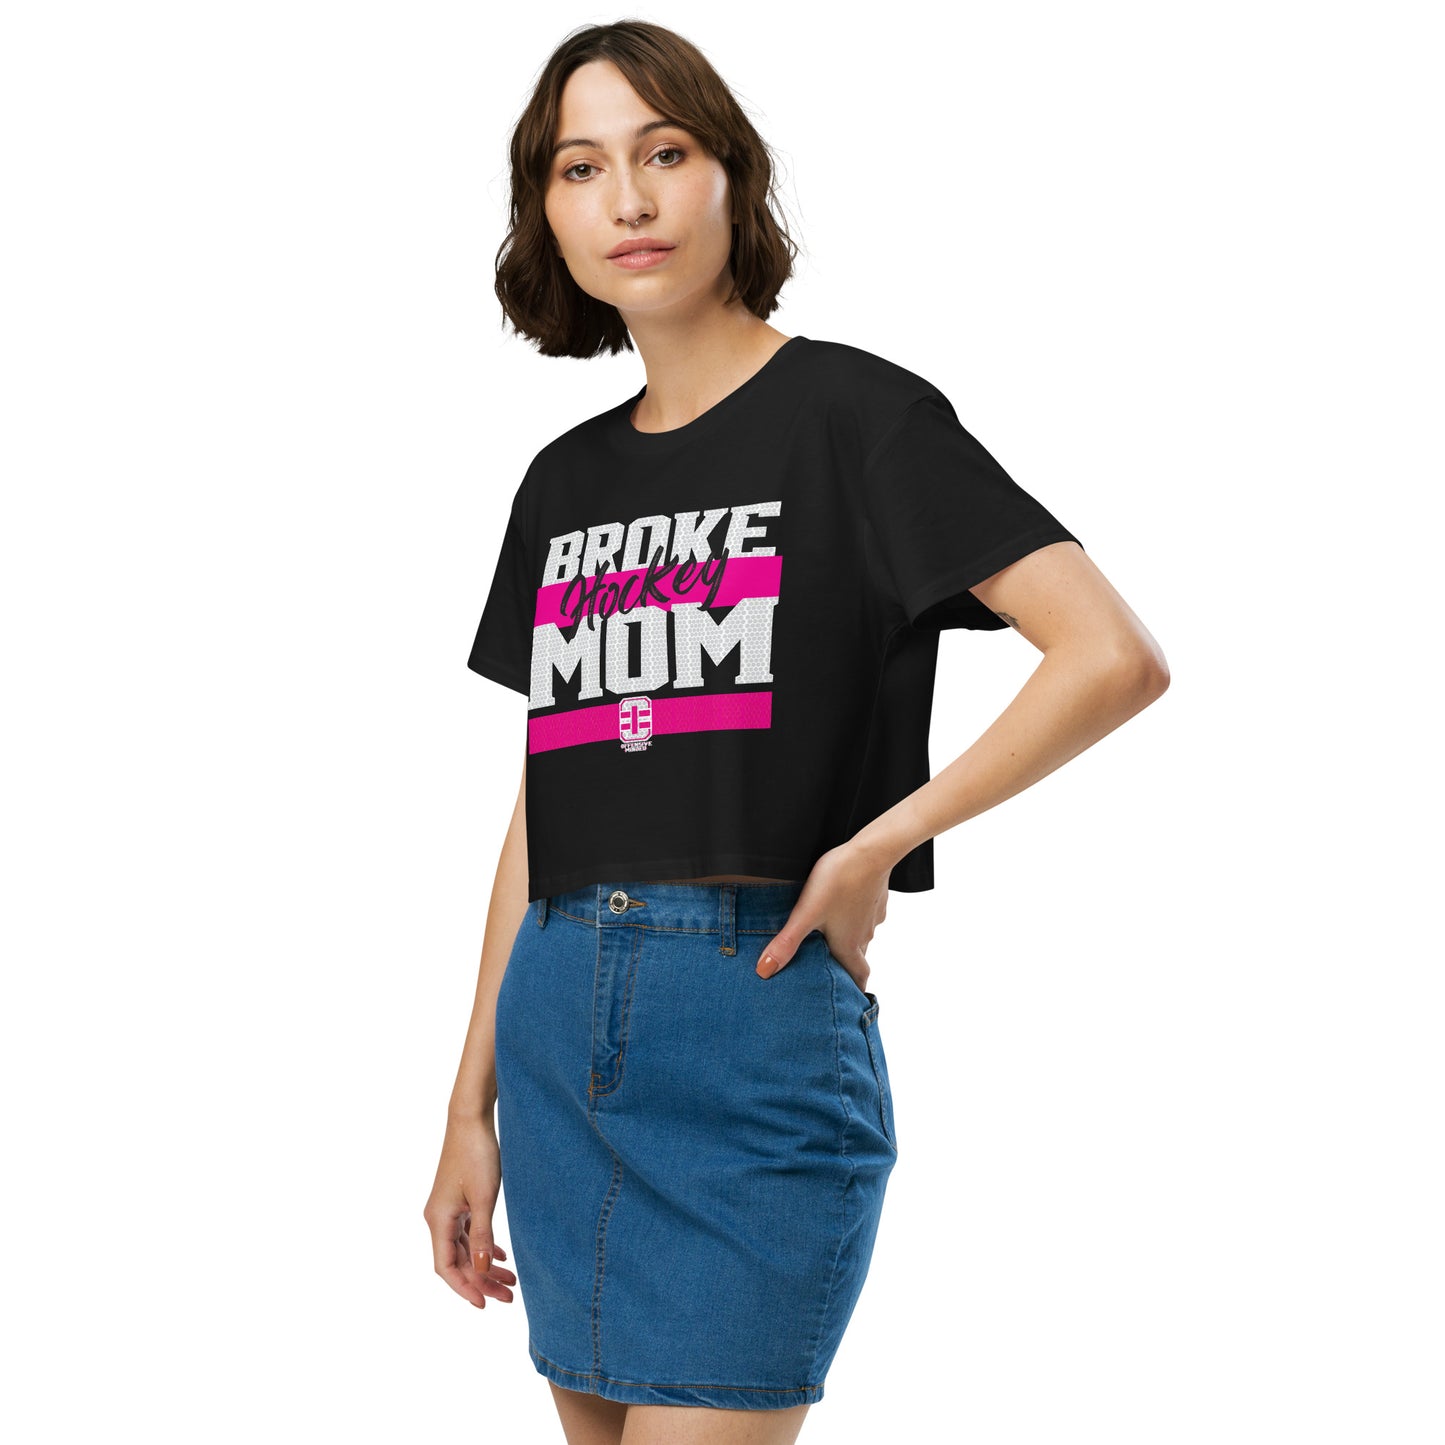 Broke Hockey Mom Women’s crop top